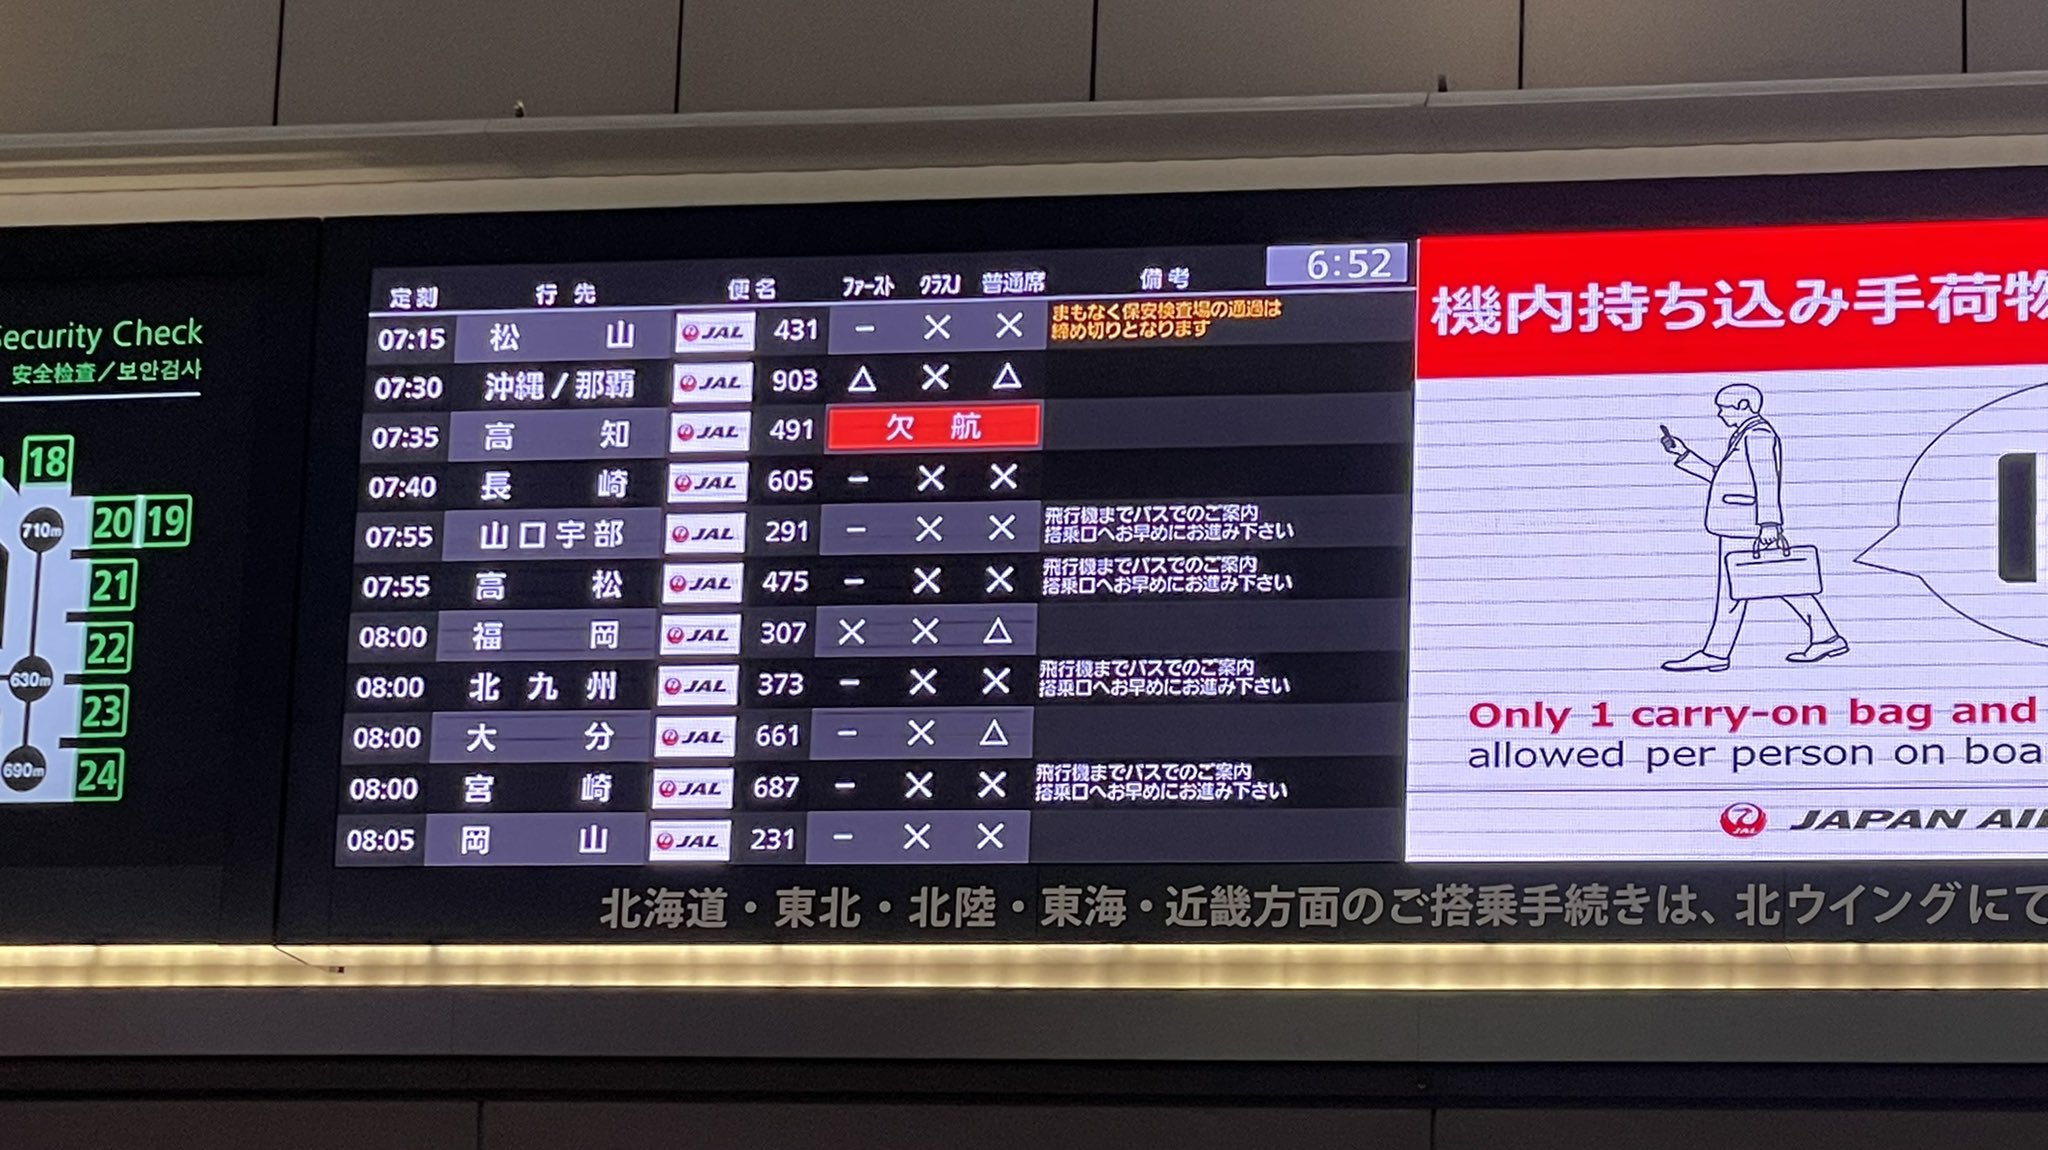 【4連休狙い】飛行機・新幹線が久しぶりの満席だらけに